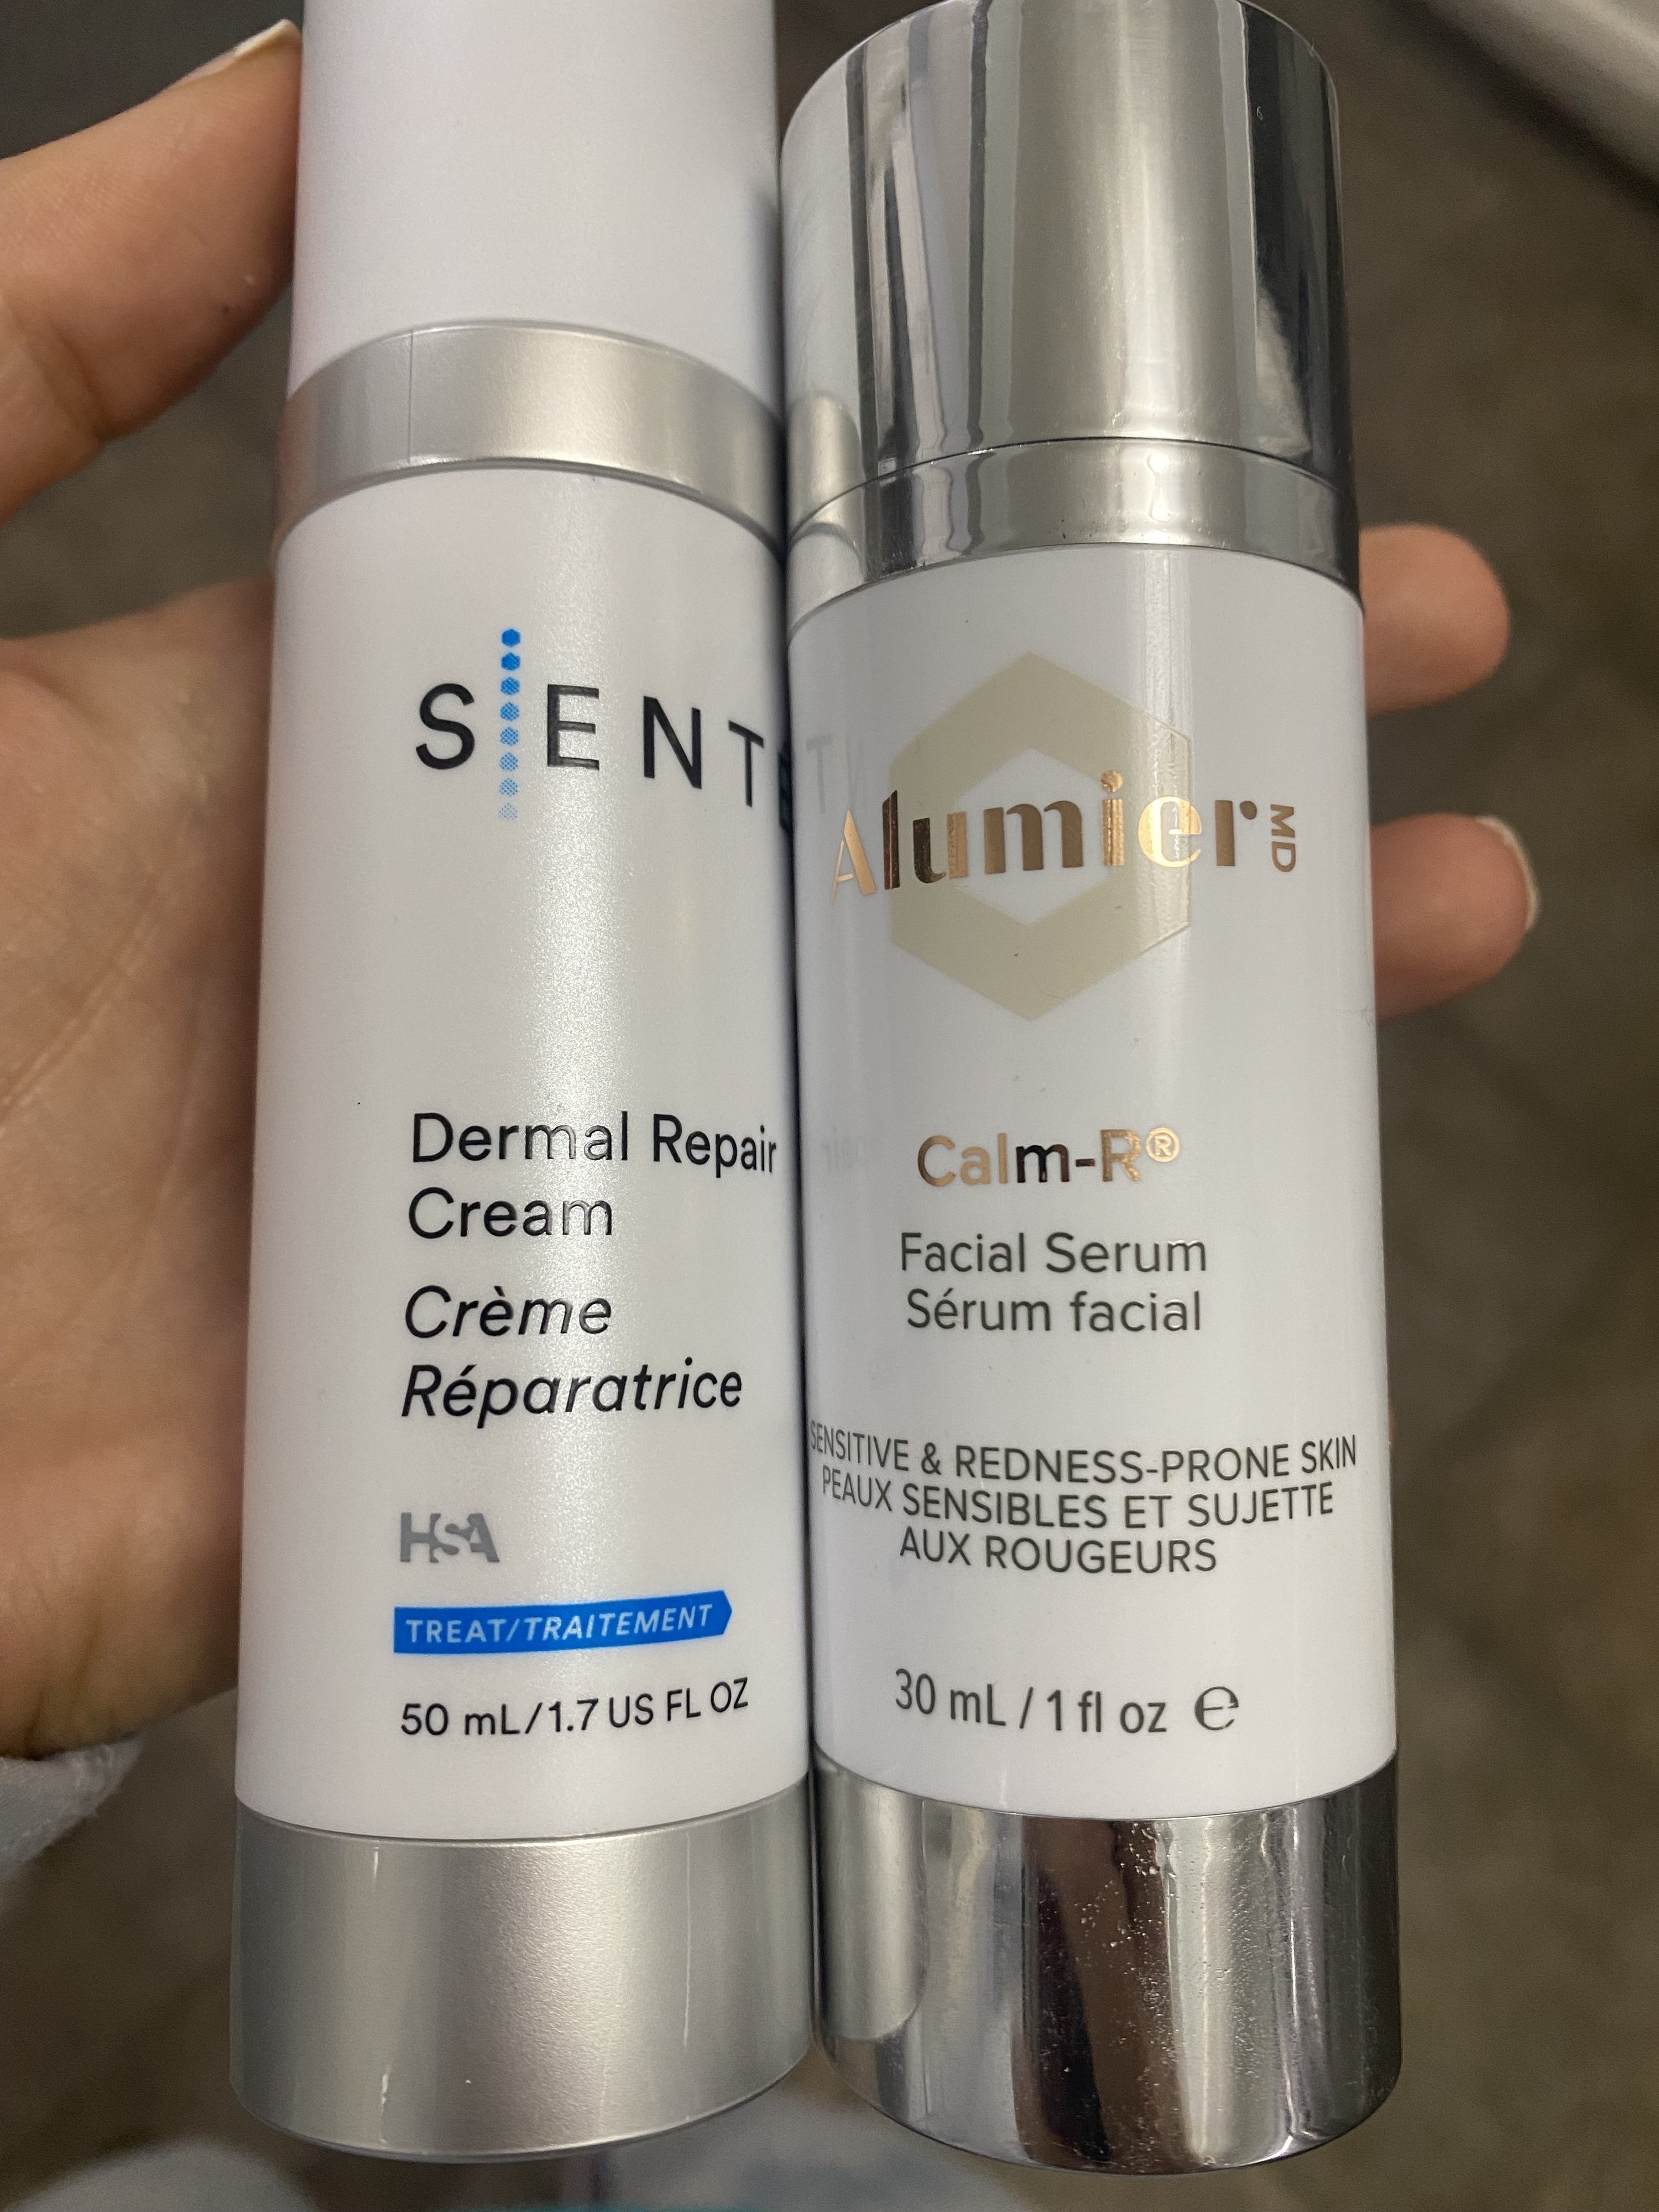 Dermal repair cream and facial serum.